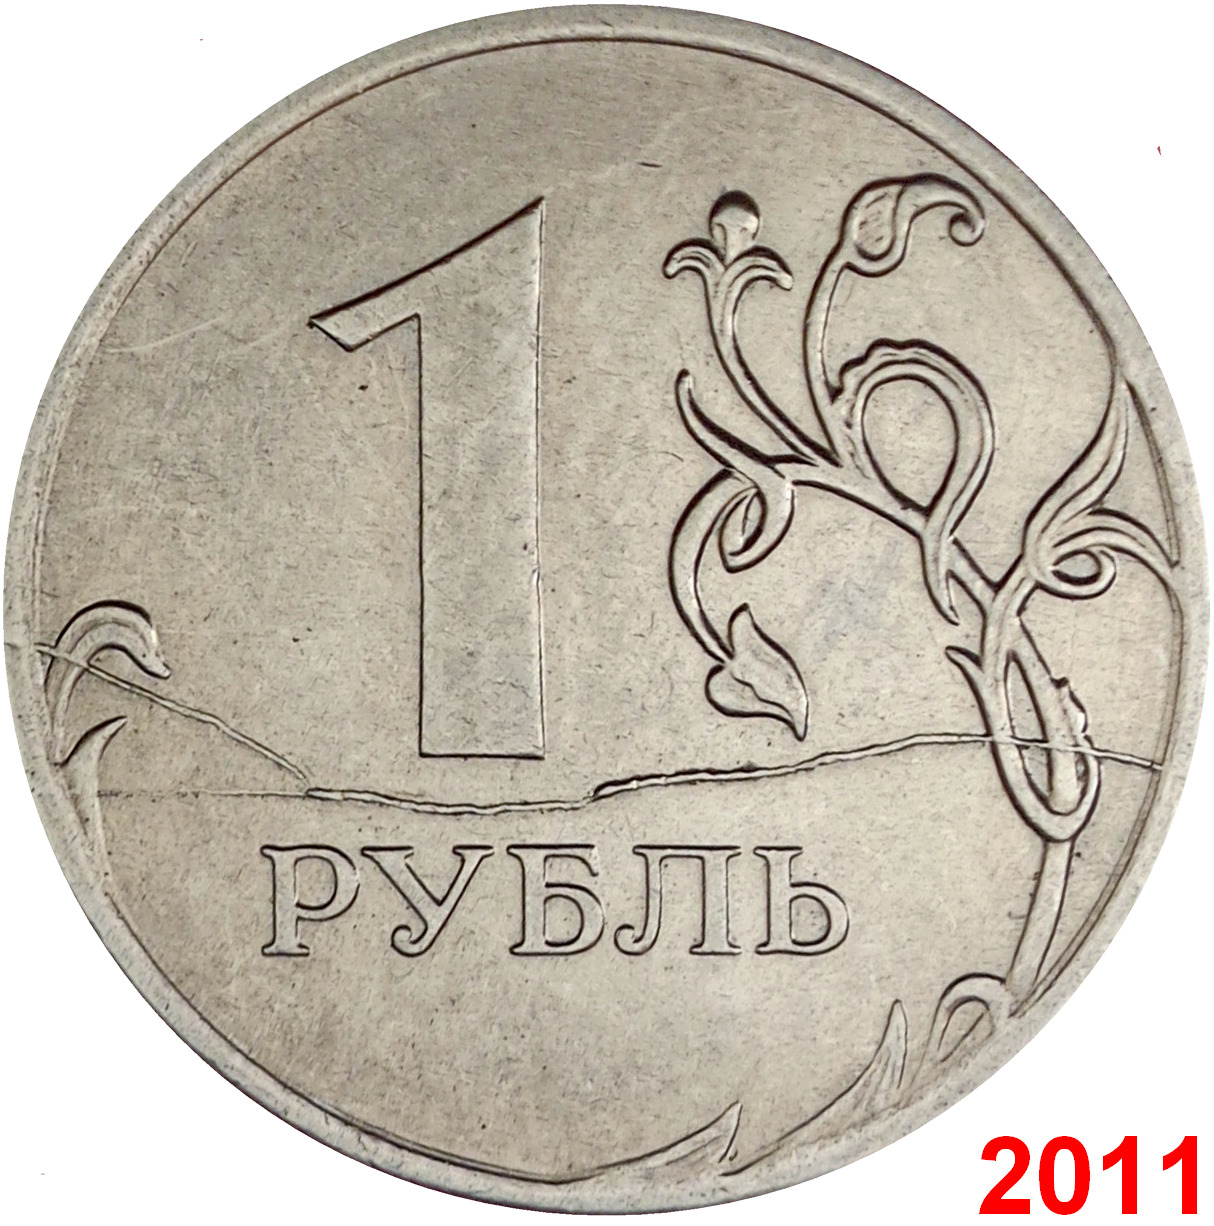 1 руб 2015 года. 1 Рубль реверс. Рубль раскол штемпеля. Монета рубль 2015. 1 Рубль 2015 года.